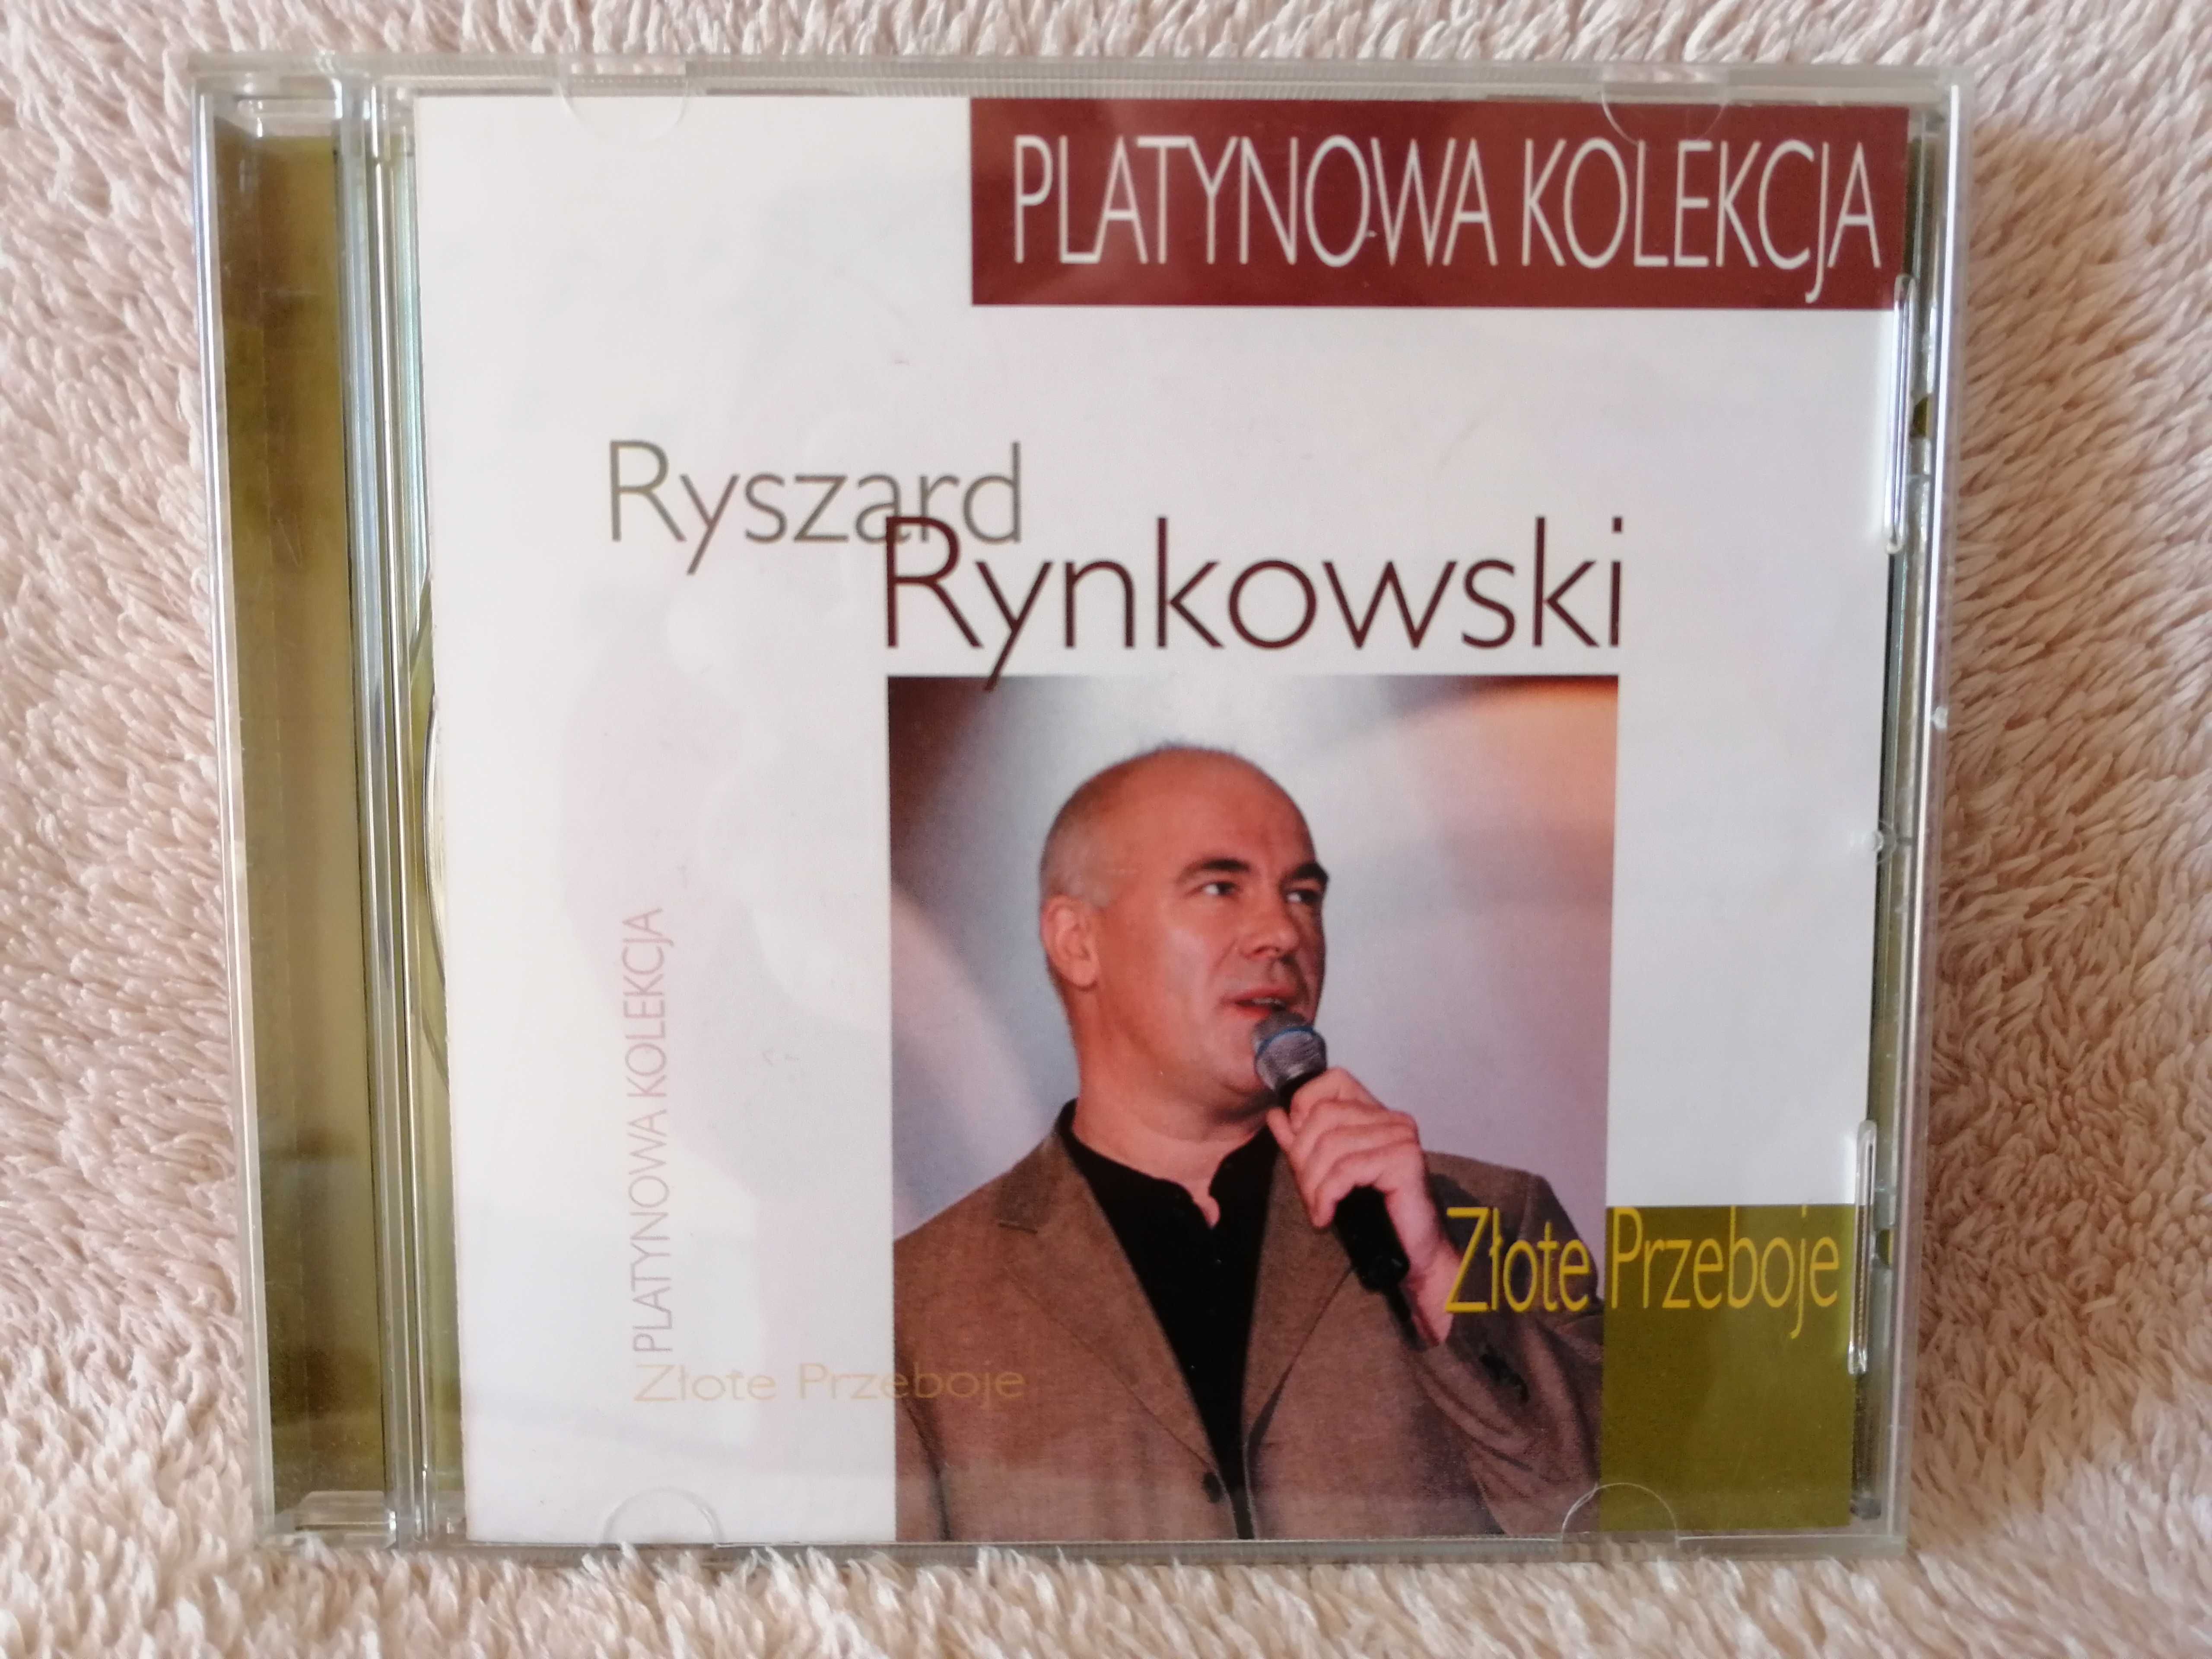 Płyta CD Ryszard Rynkowski "Złote Przeboje"